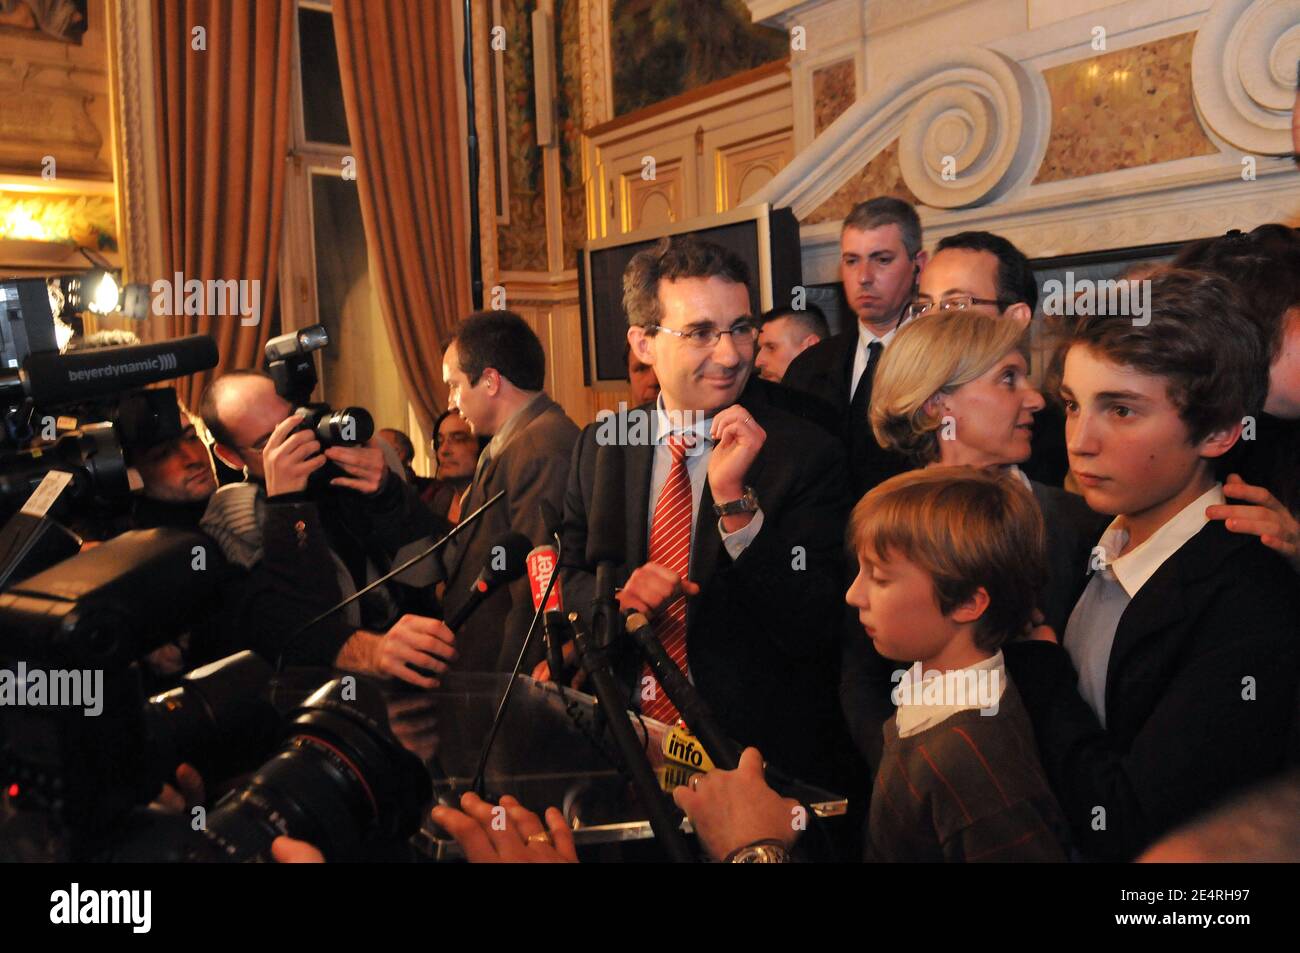 Jean-Christophe Fromantin avec son épouse Laure Fromantin et leur fils lors  de sa conférence de presse après les résultats du deuxième tour des  élections municipales de Neuilly-sur-Seine, en France, le 16 mars